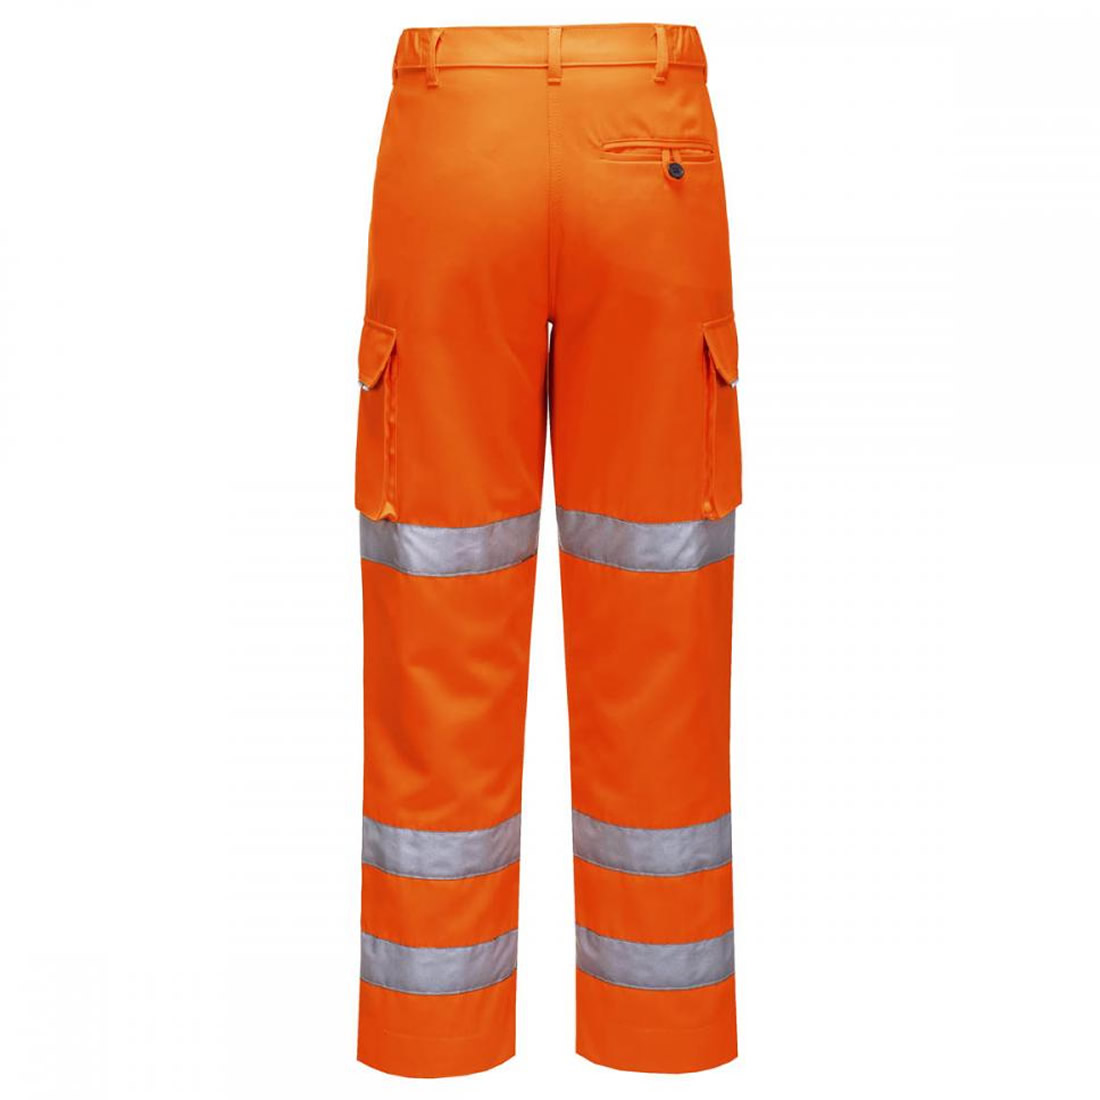 Ladies Hi Vis Work Trousers Portwest Polycotton Safe Cargo Pants Knee ...